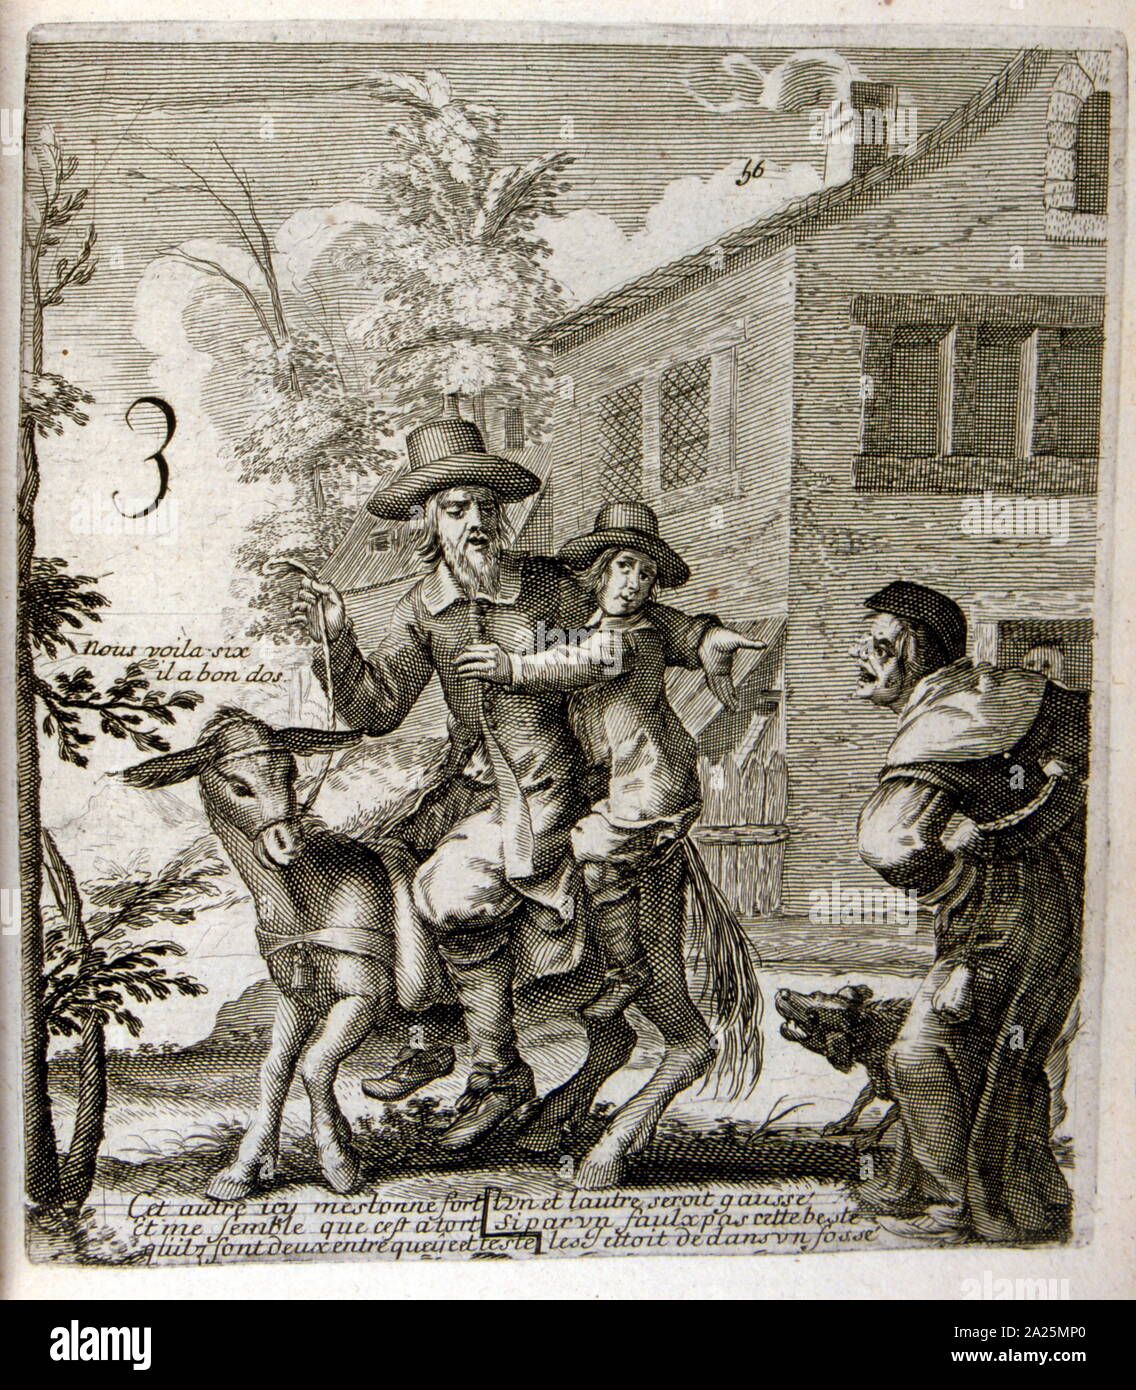 Abbildung von Jacques Lagniet (1620 - 1672), aus dem XVII Jahrhundert Ausgabe der Fabeln von Jean de La Fontaine (1621 - 1695), französischer fabulist und einer der meistgelesenen französischen Dichter des 17. Jahrhunderts. Er ist vor allem für seine Fabeln, die ein Modell für spätere fabulists in ganz Europa bekannt. Jean de La Fontaine gesammelten Fabeln aus einer Vielzahl von Quellen, sowohl in West- und Osteuropa, und passte sie in die Französische free Vers. Sie waren unter dem allgemeinen Titel der Fabeln in mehreren Bänden von 1668 bis 1694 ausgestellt und gelten als Klassiker der französischen Literatur. Stockfoto